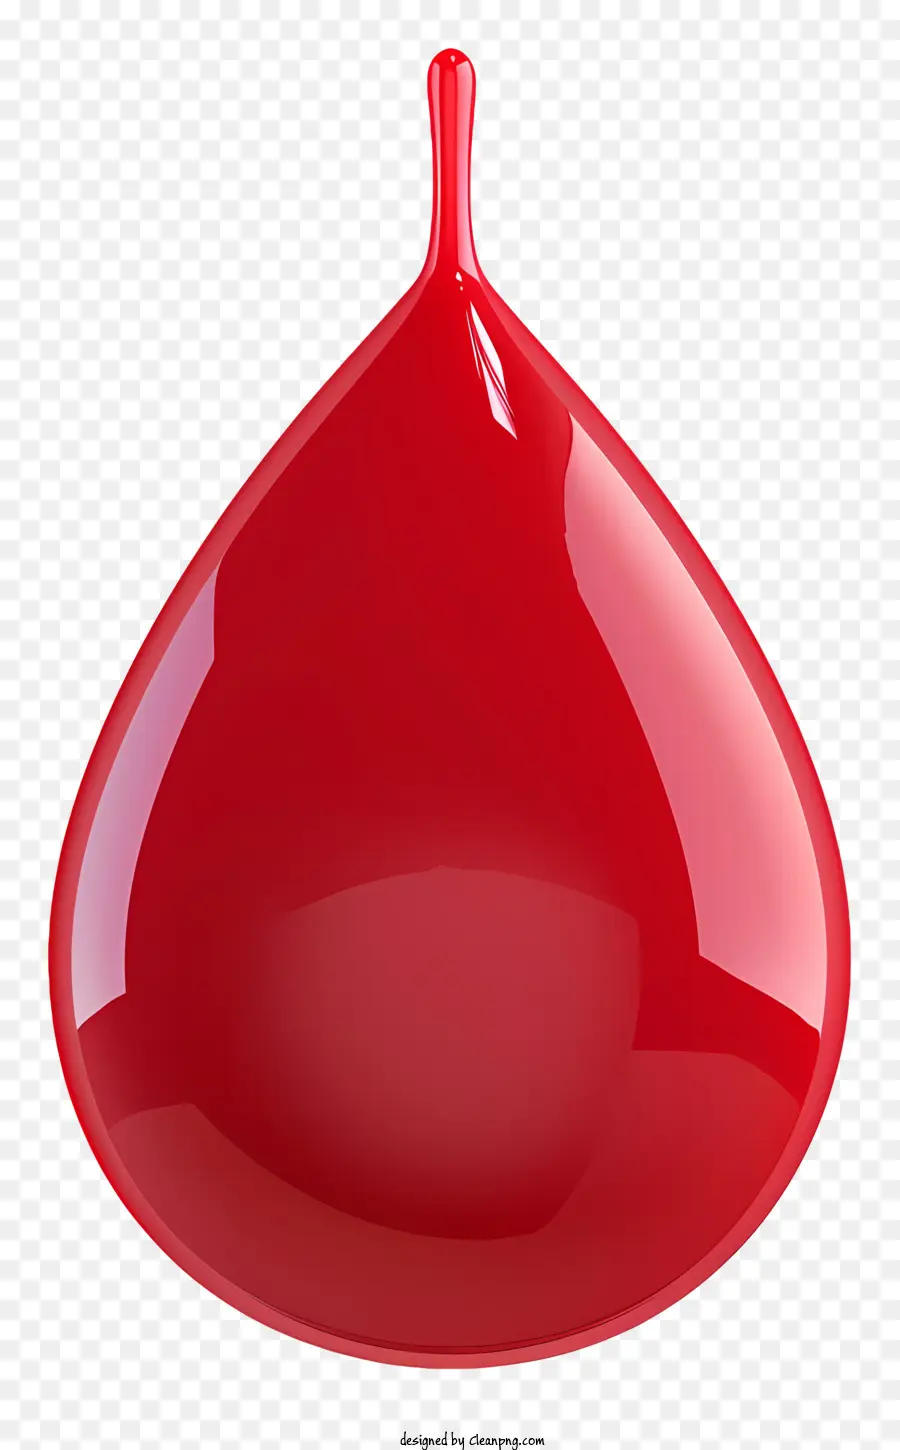 Tropfen des Blutflüssigkeitsabfalls rot suspendiert - Der rote Flüssigkeitsabfall erscheint in Luft aufgehängt